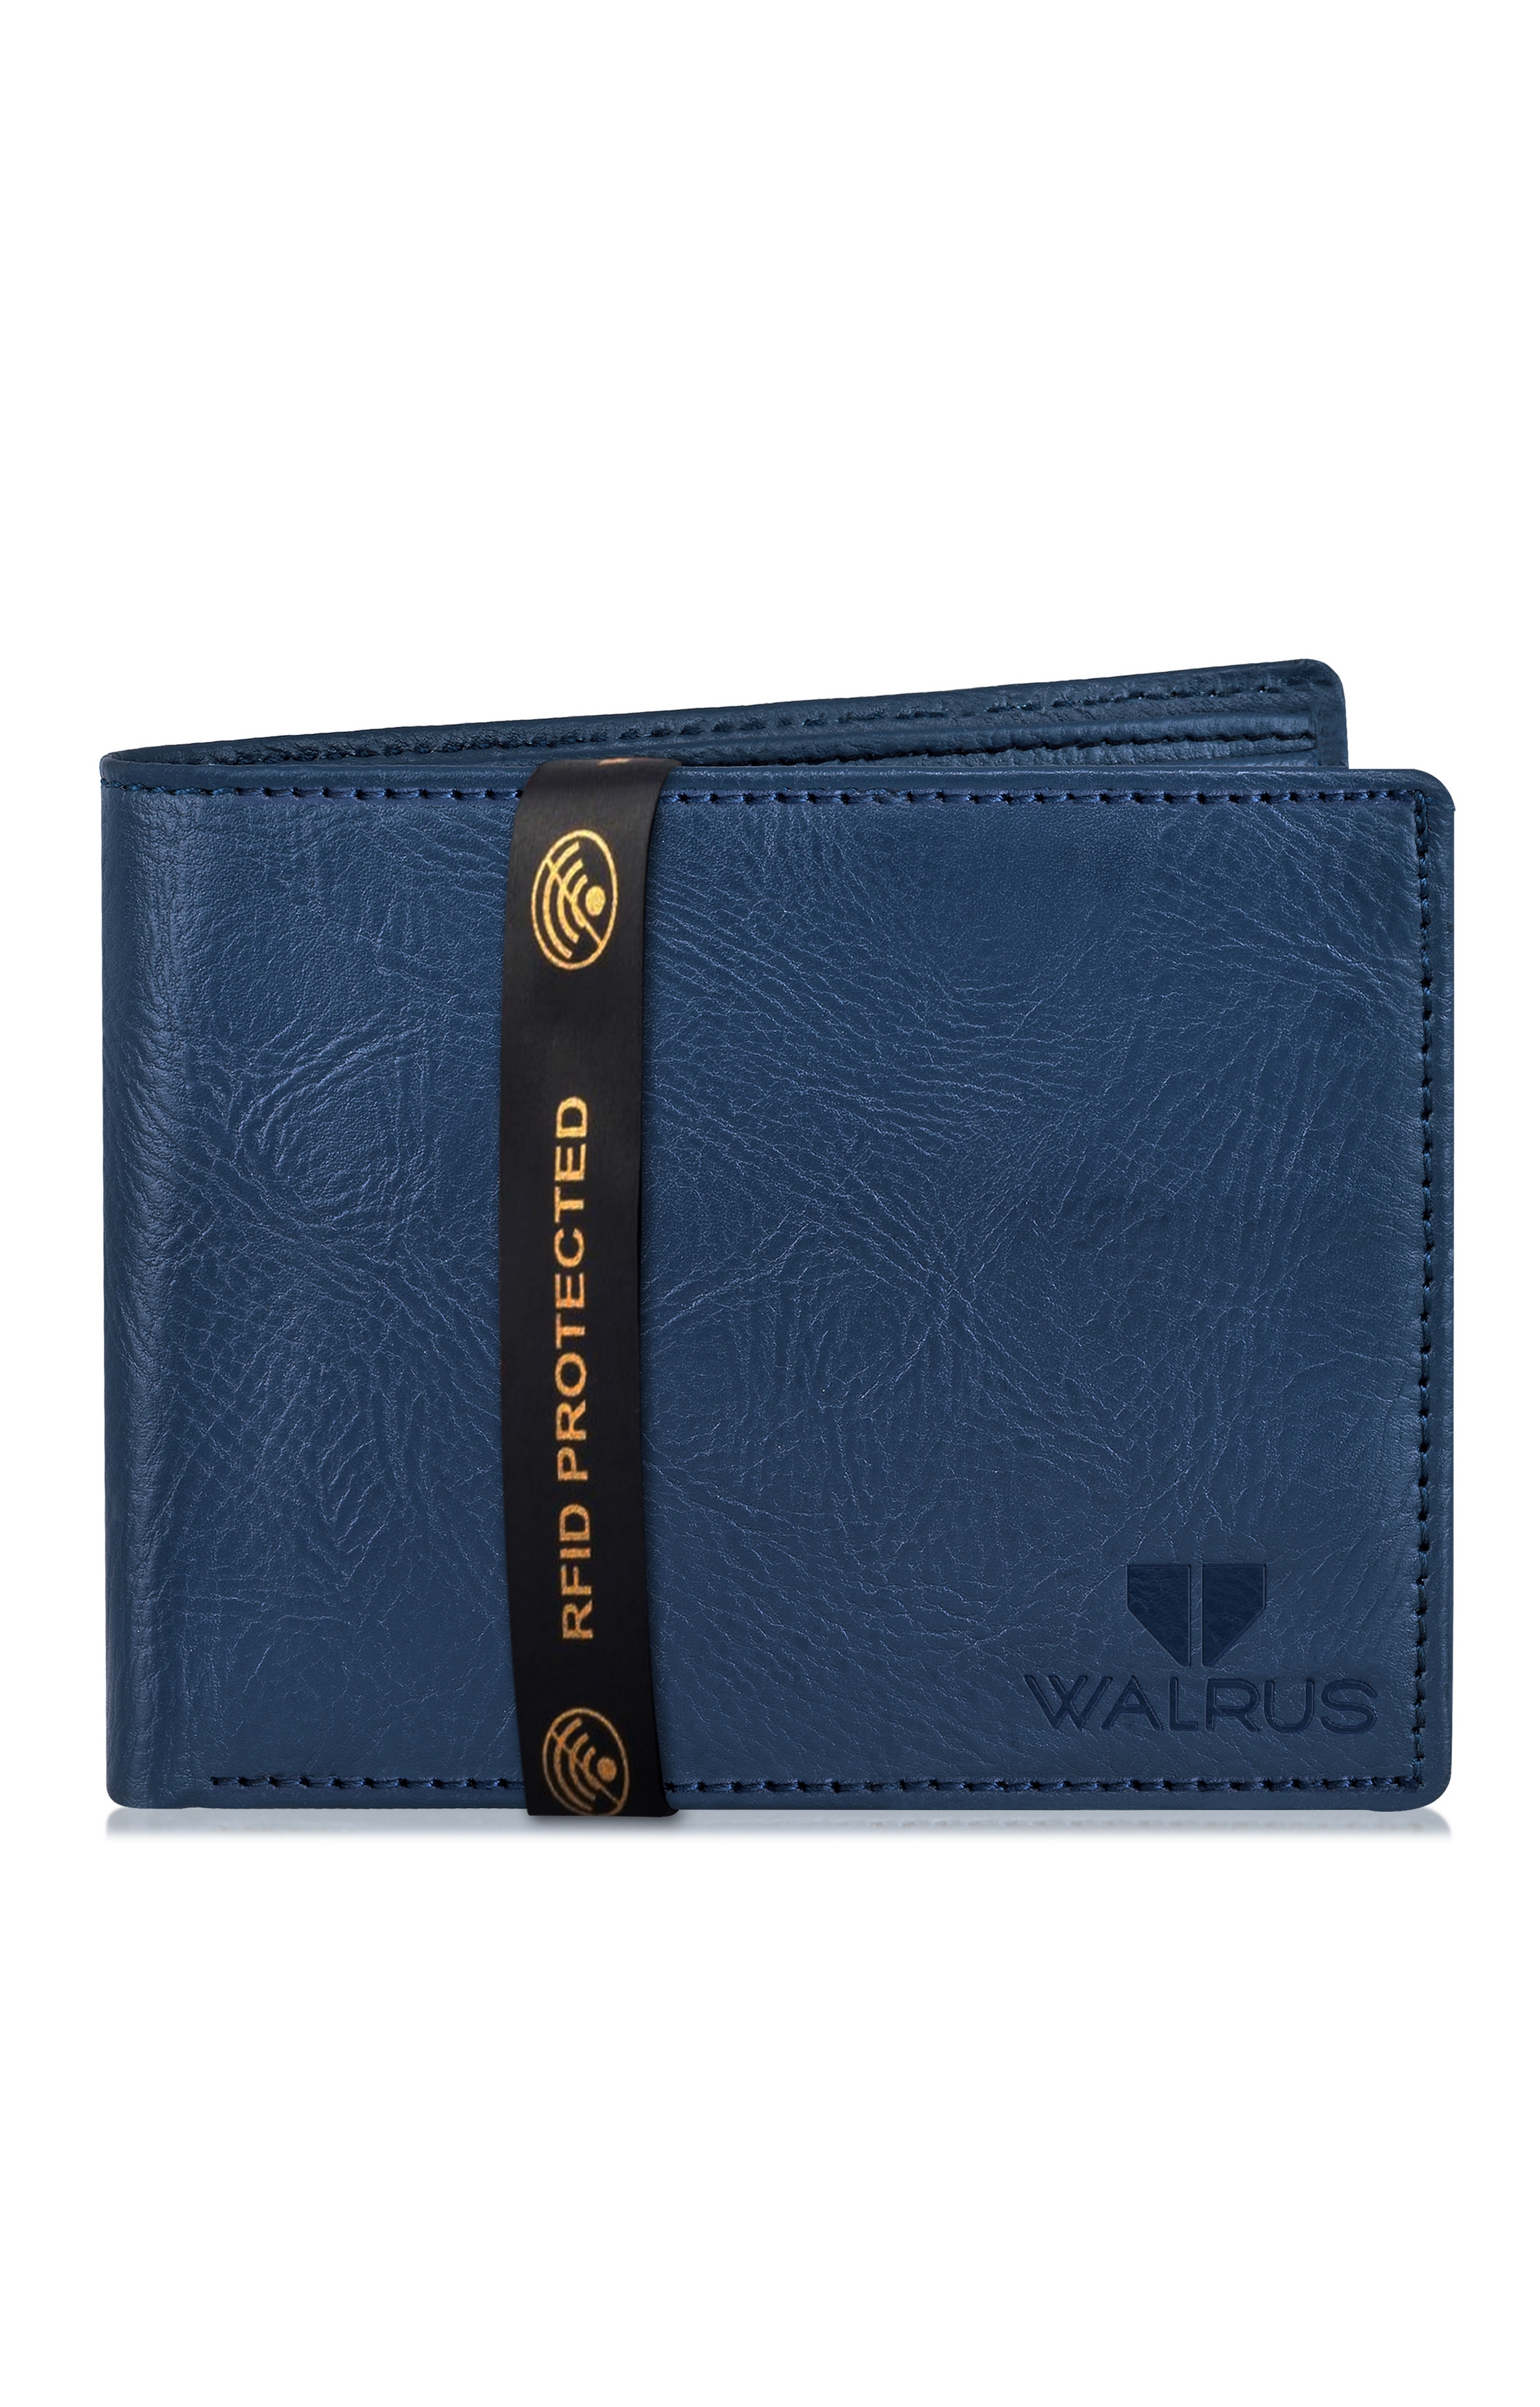 Walrus | Blue Wallet